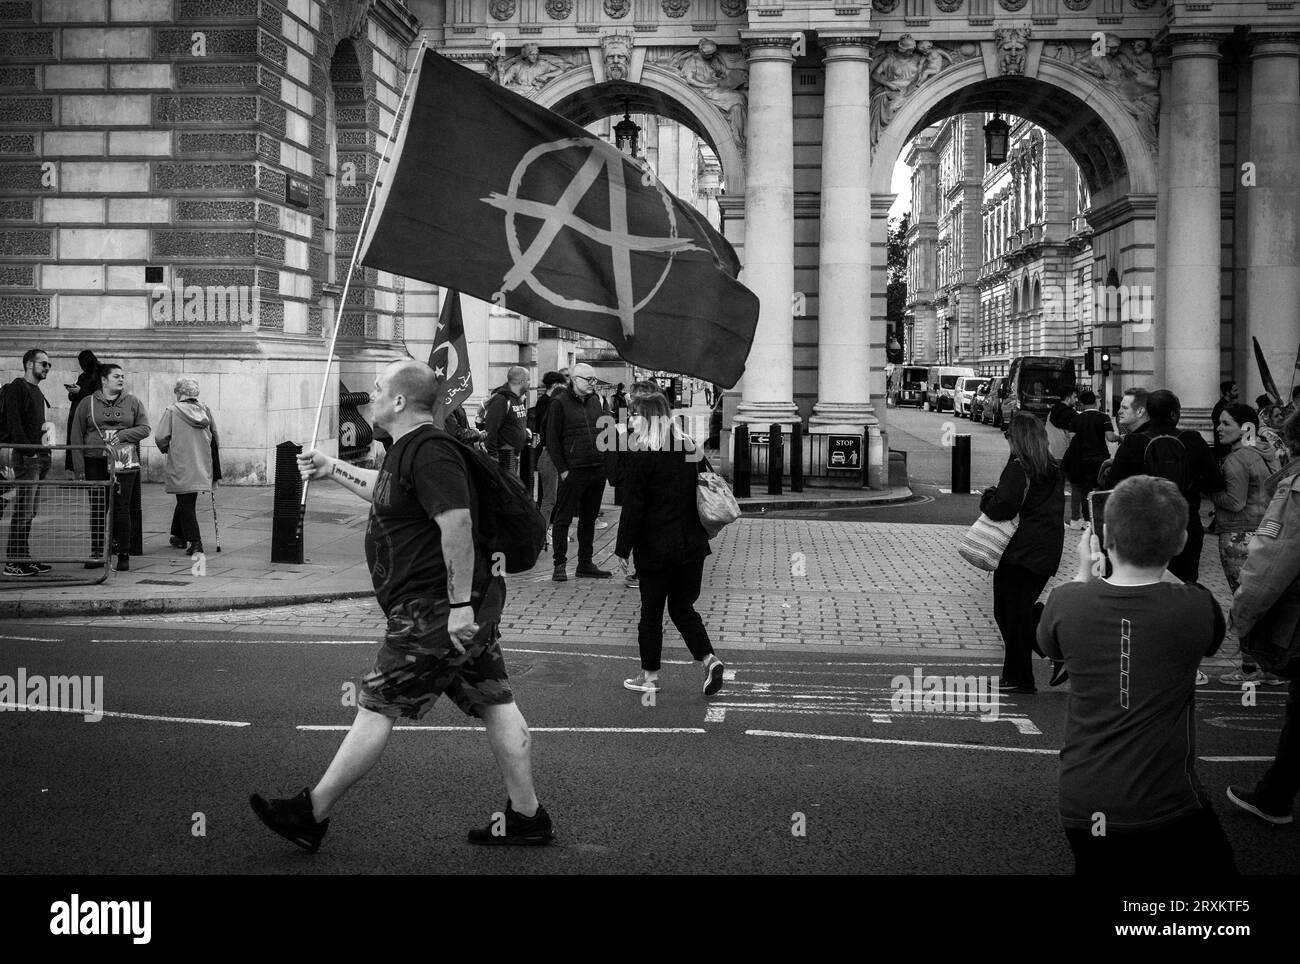 Un homme porte un drapeau anarchiste devant le ministère britannique des Affaires étrangères et les touristes alors qu'il descend Whitehall dans le centre de Londres. Il avait été atte Banque D'Images